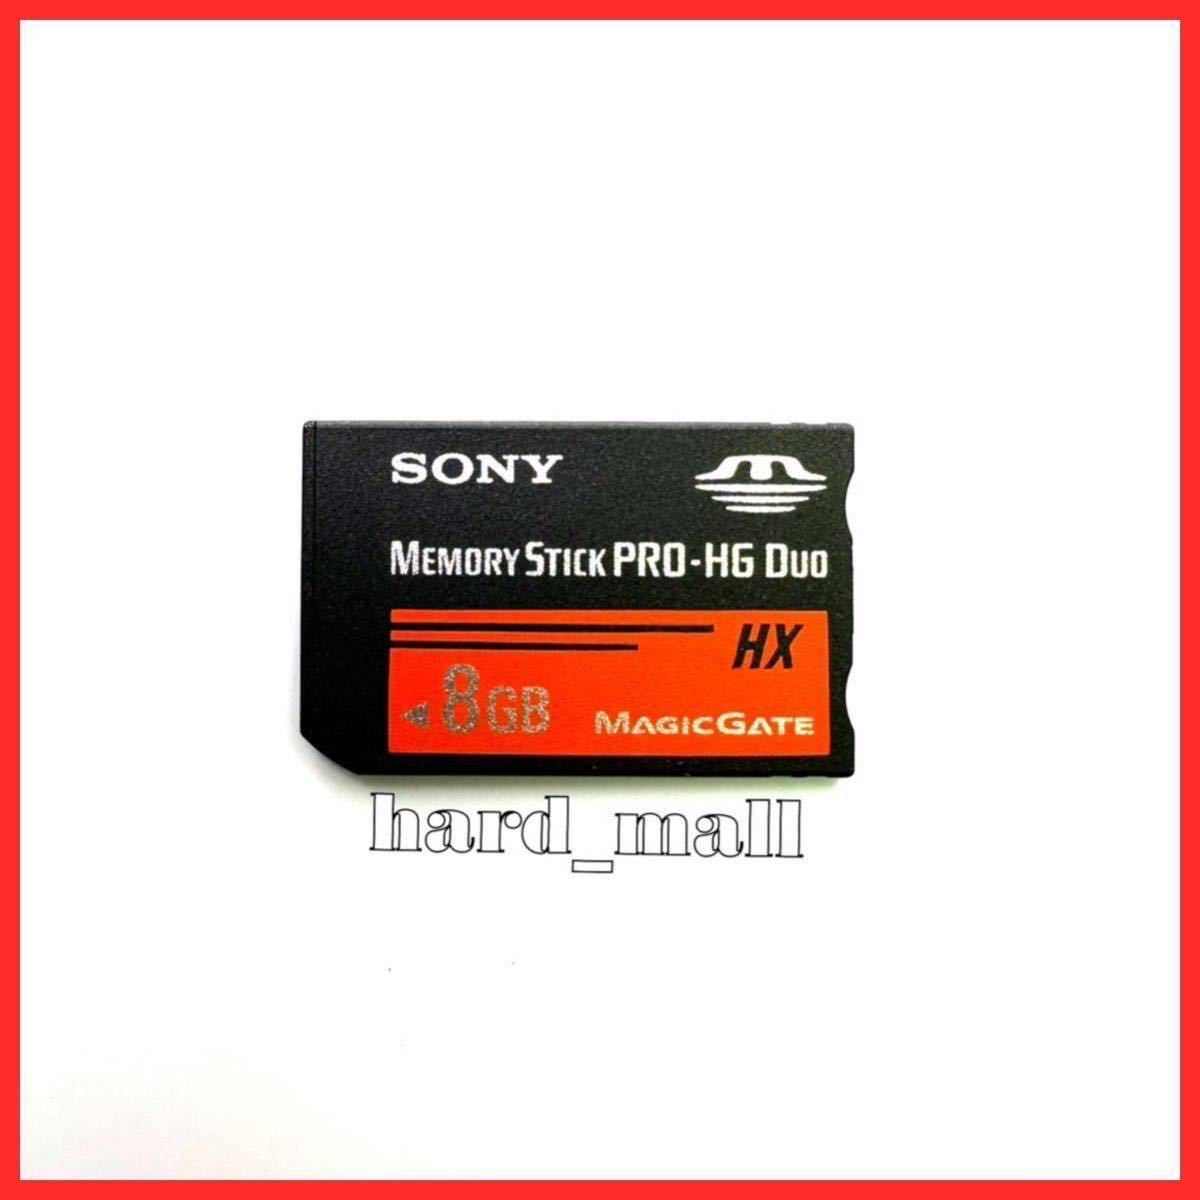 【送料無料】SONY ソニー メモリースティック プロ デュオ 8GB PRO-HG Duo HX メモリーカード メモカ PSP-1000 PSP-2000 PSP-3000 カメラ_画像1